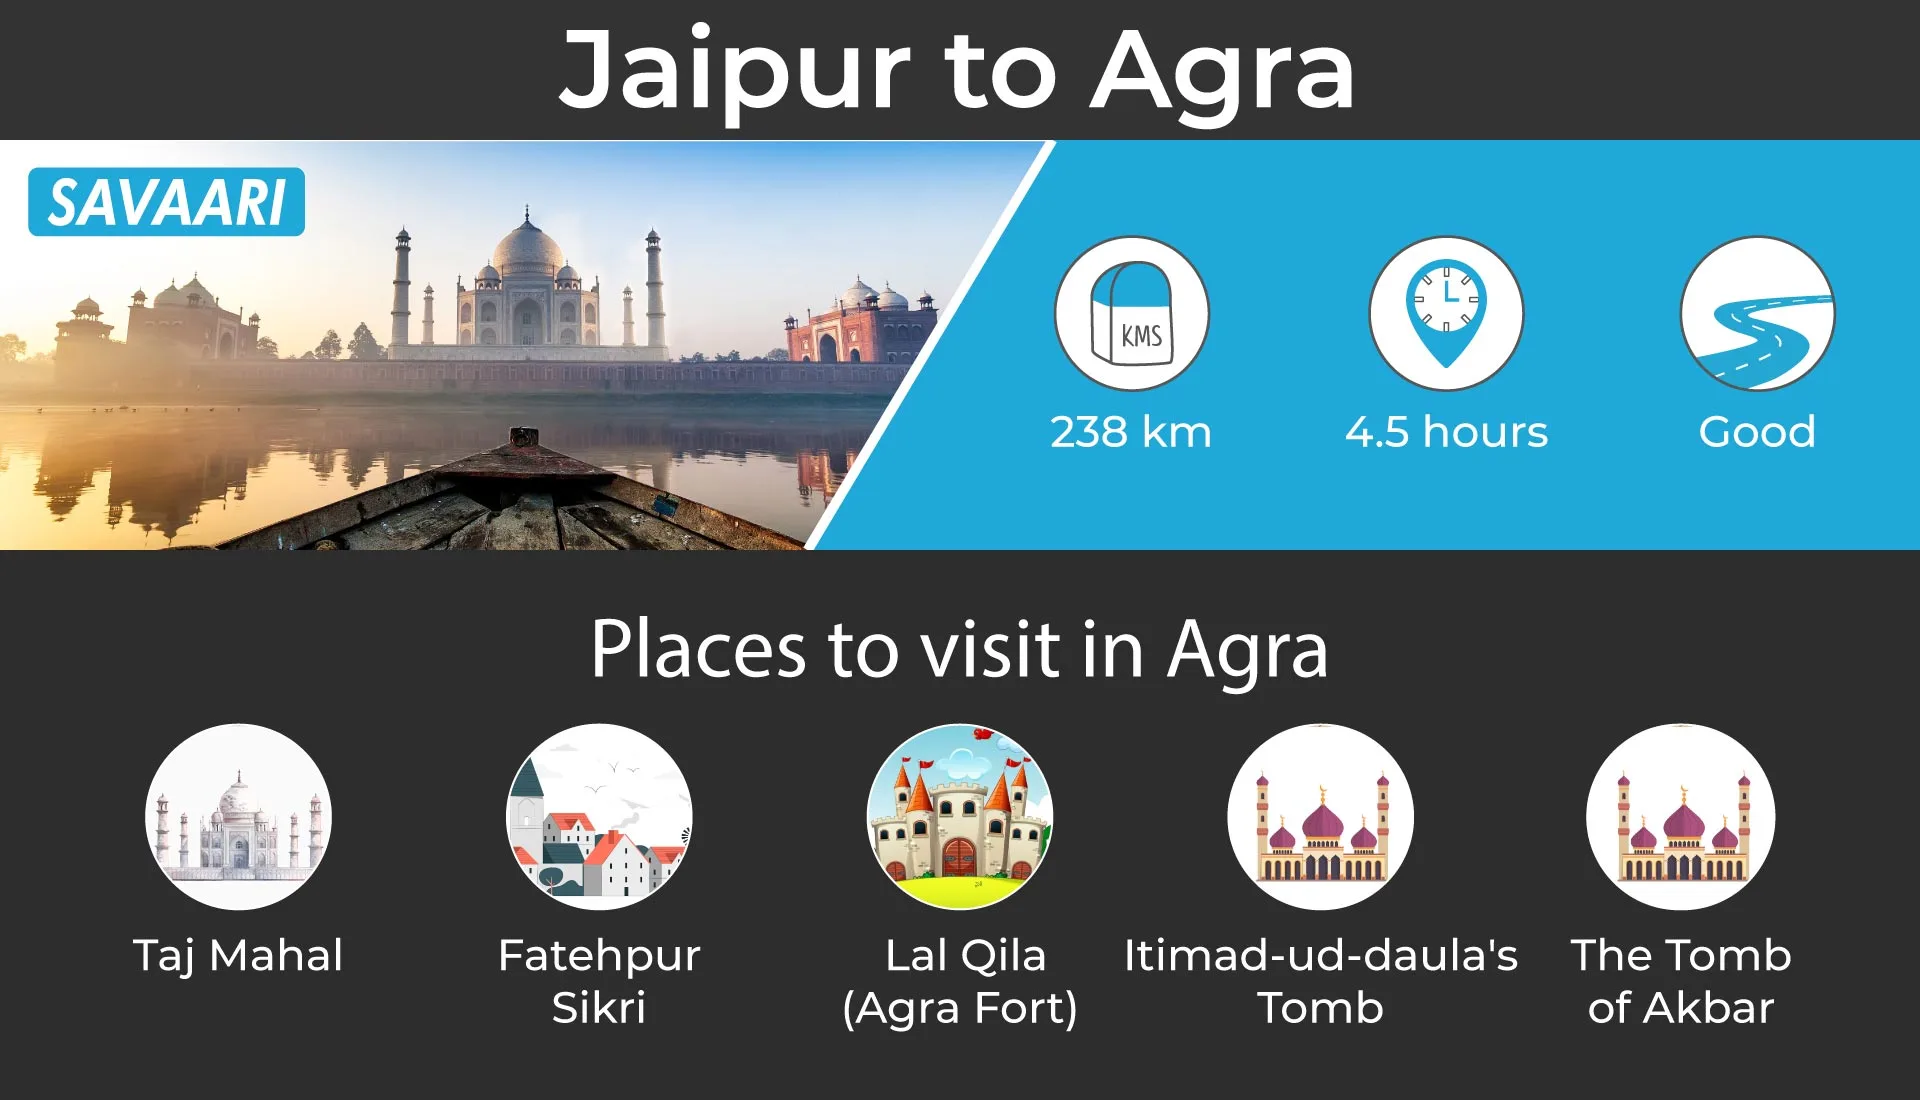 Jaipur to agra weekend getaway